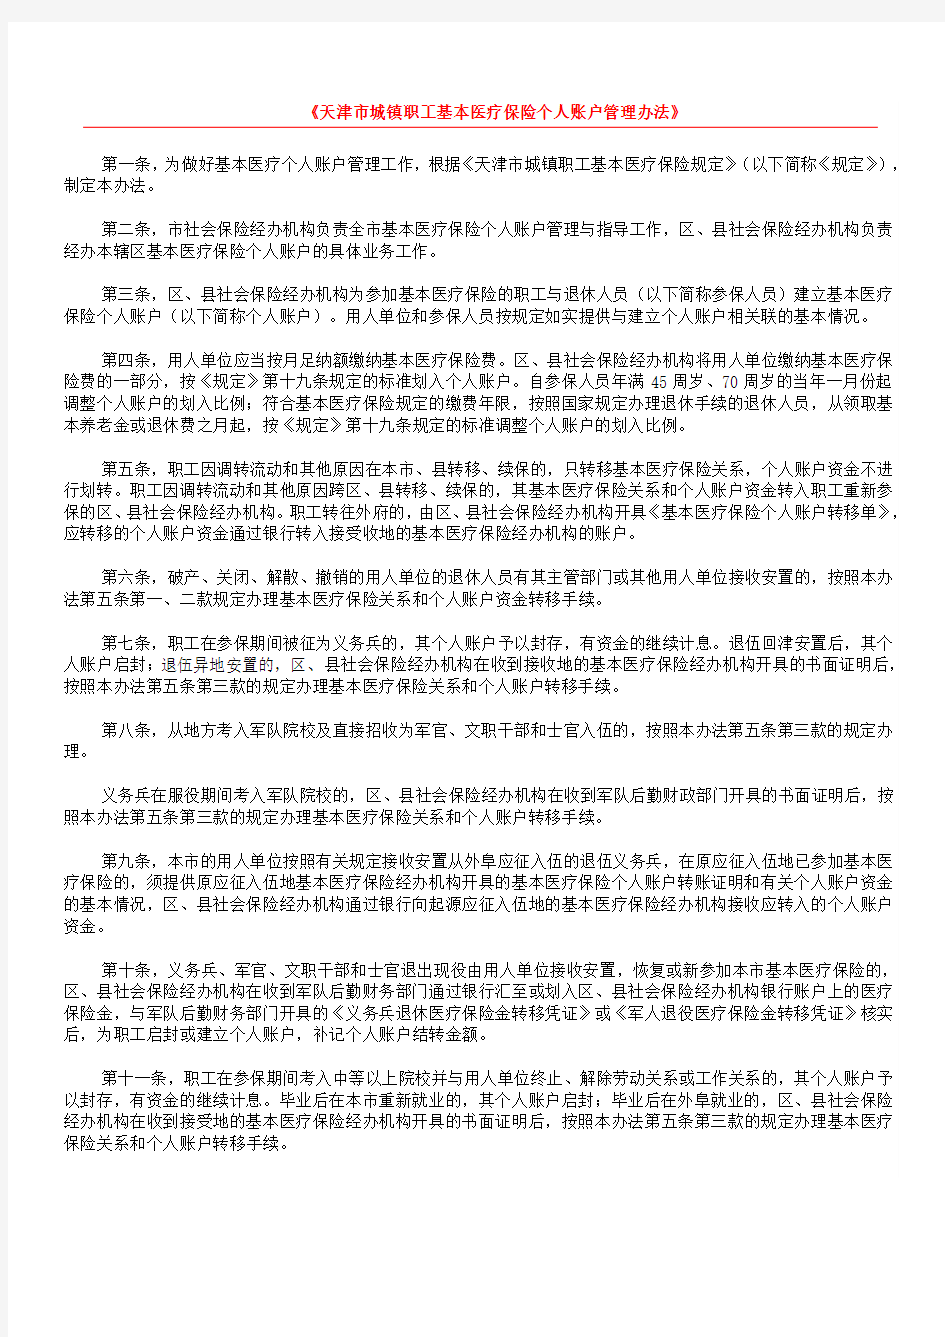 天津市城镇职工基本医疗保险个人账户管理办法